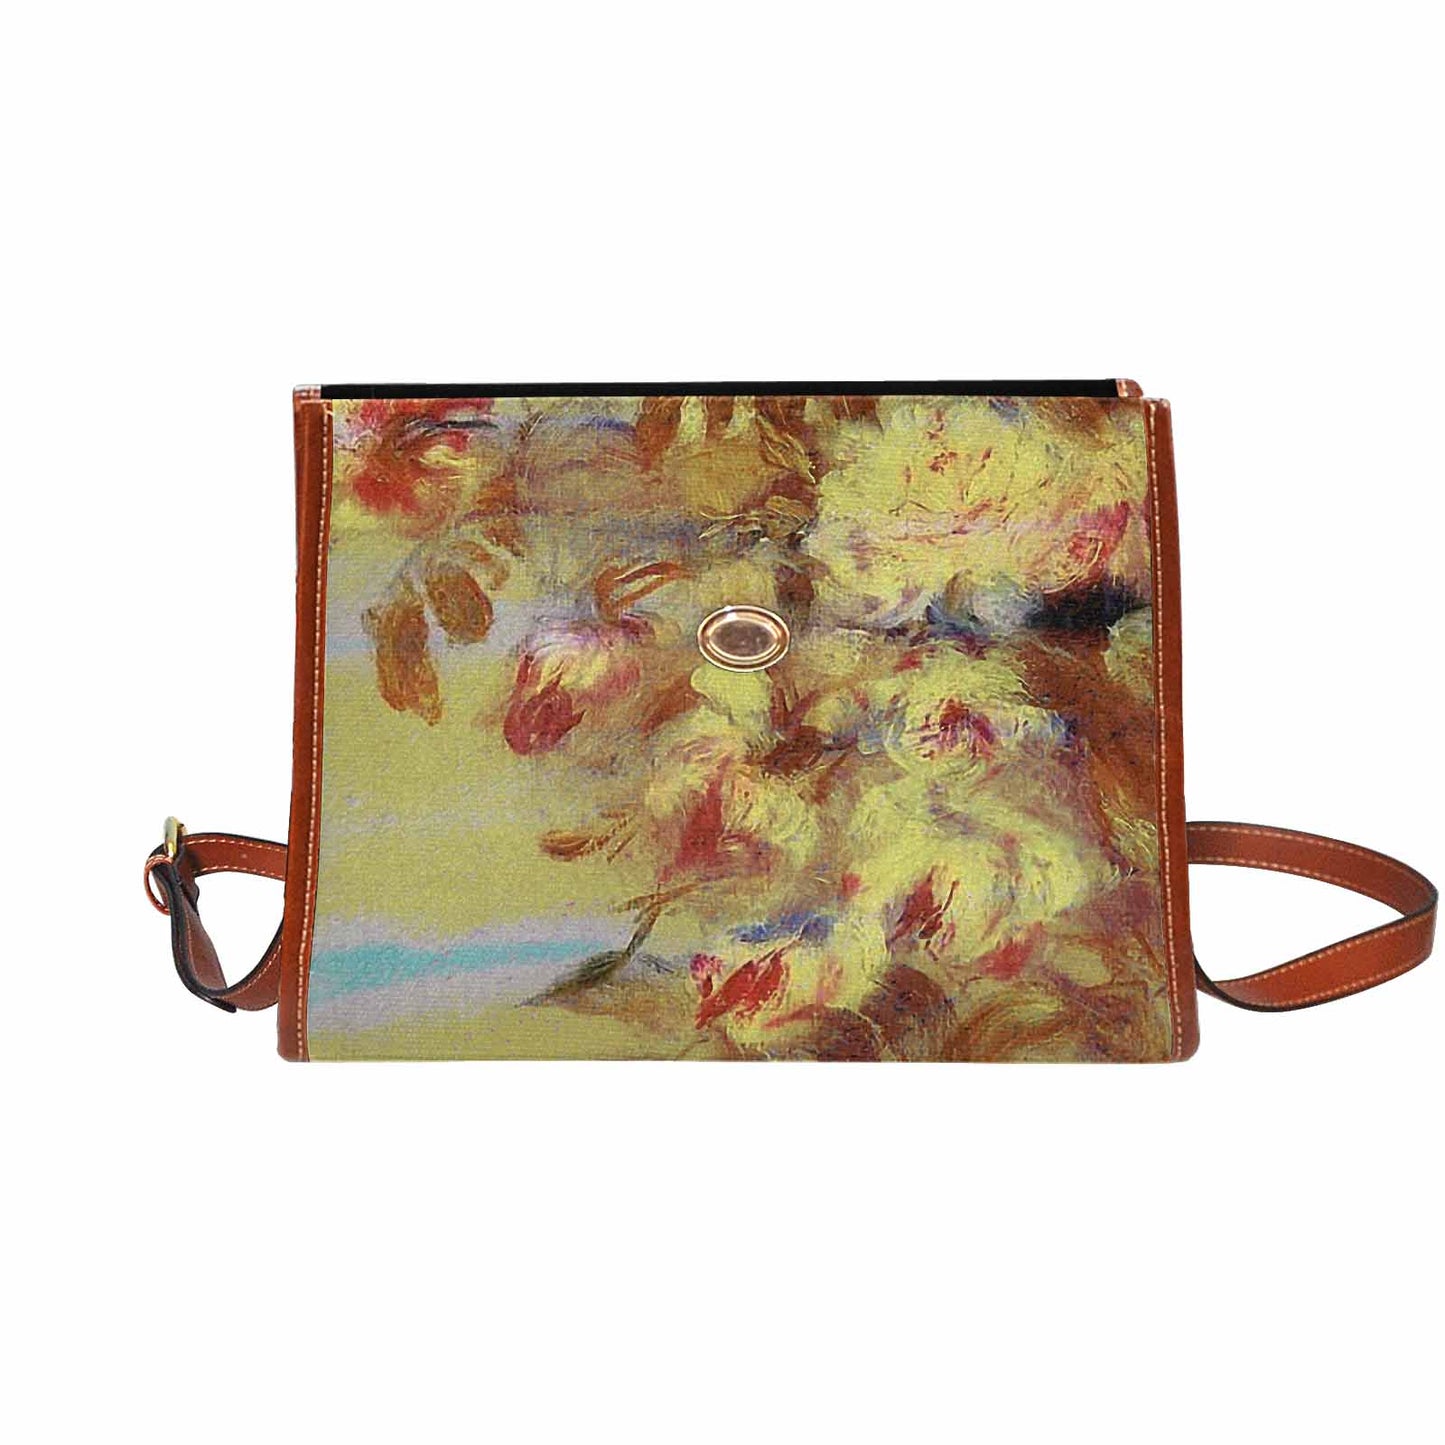 Vintage Floral Handbag, Design 11 Model 1695341 C20